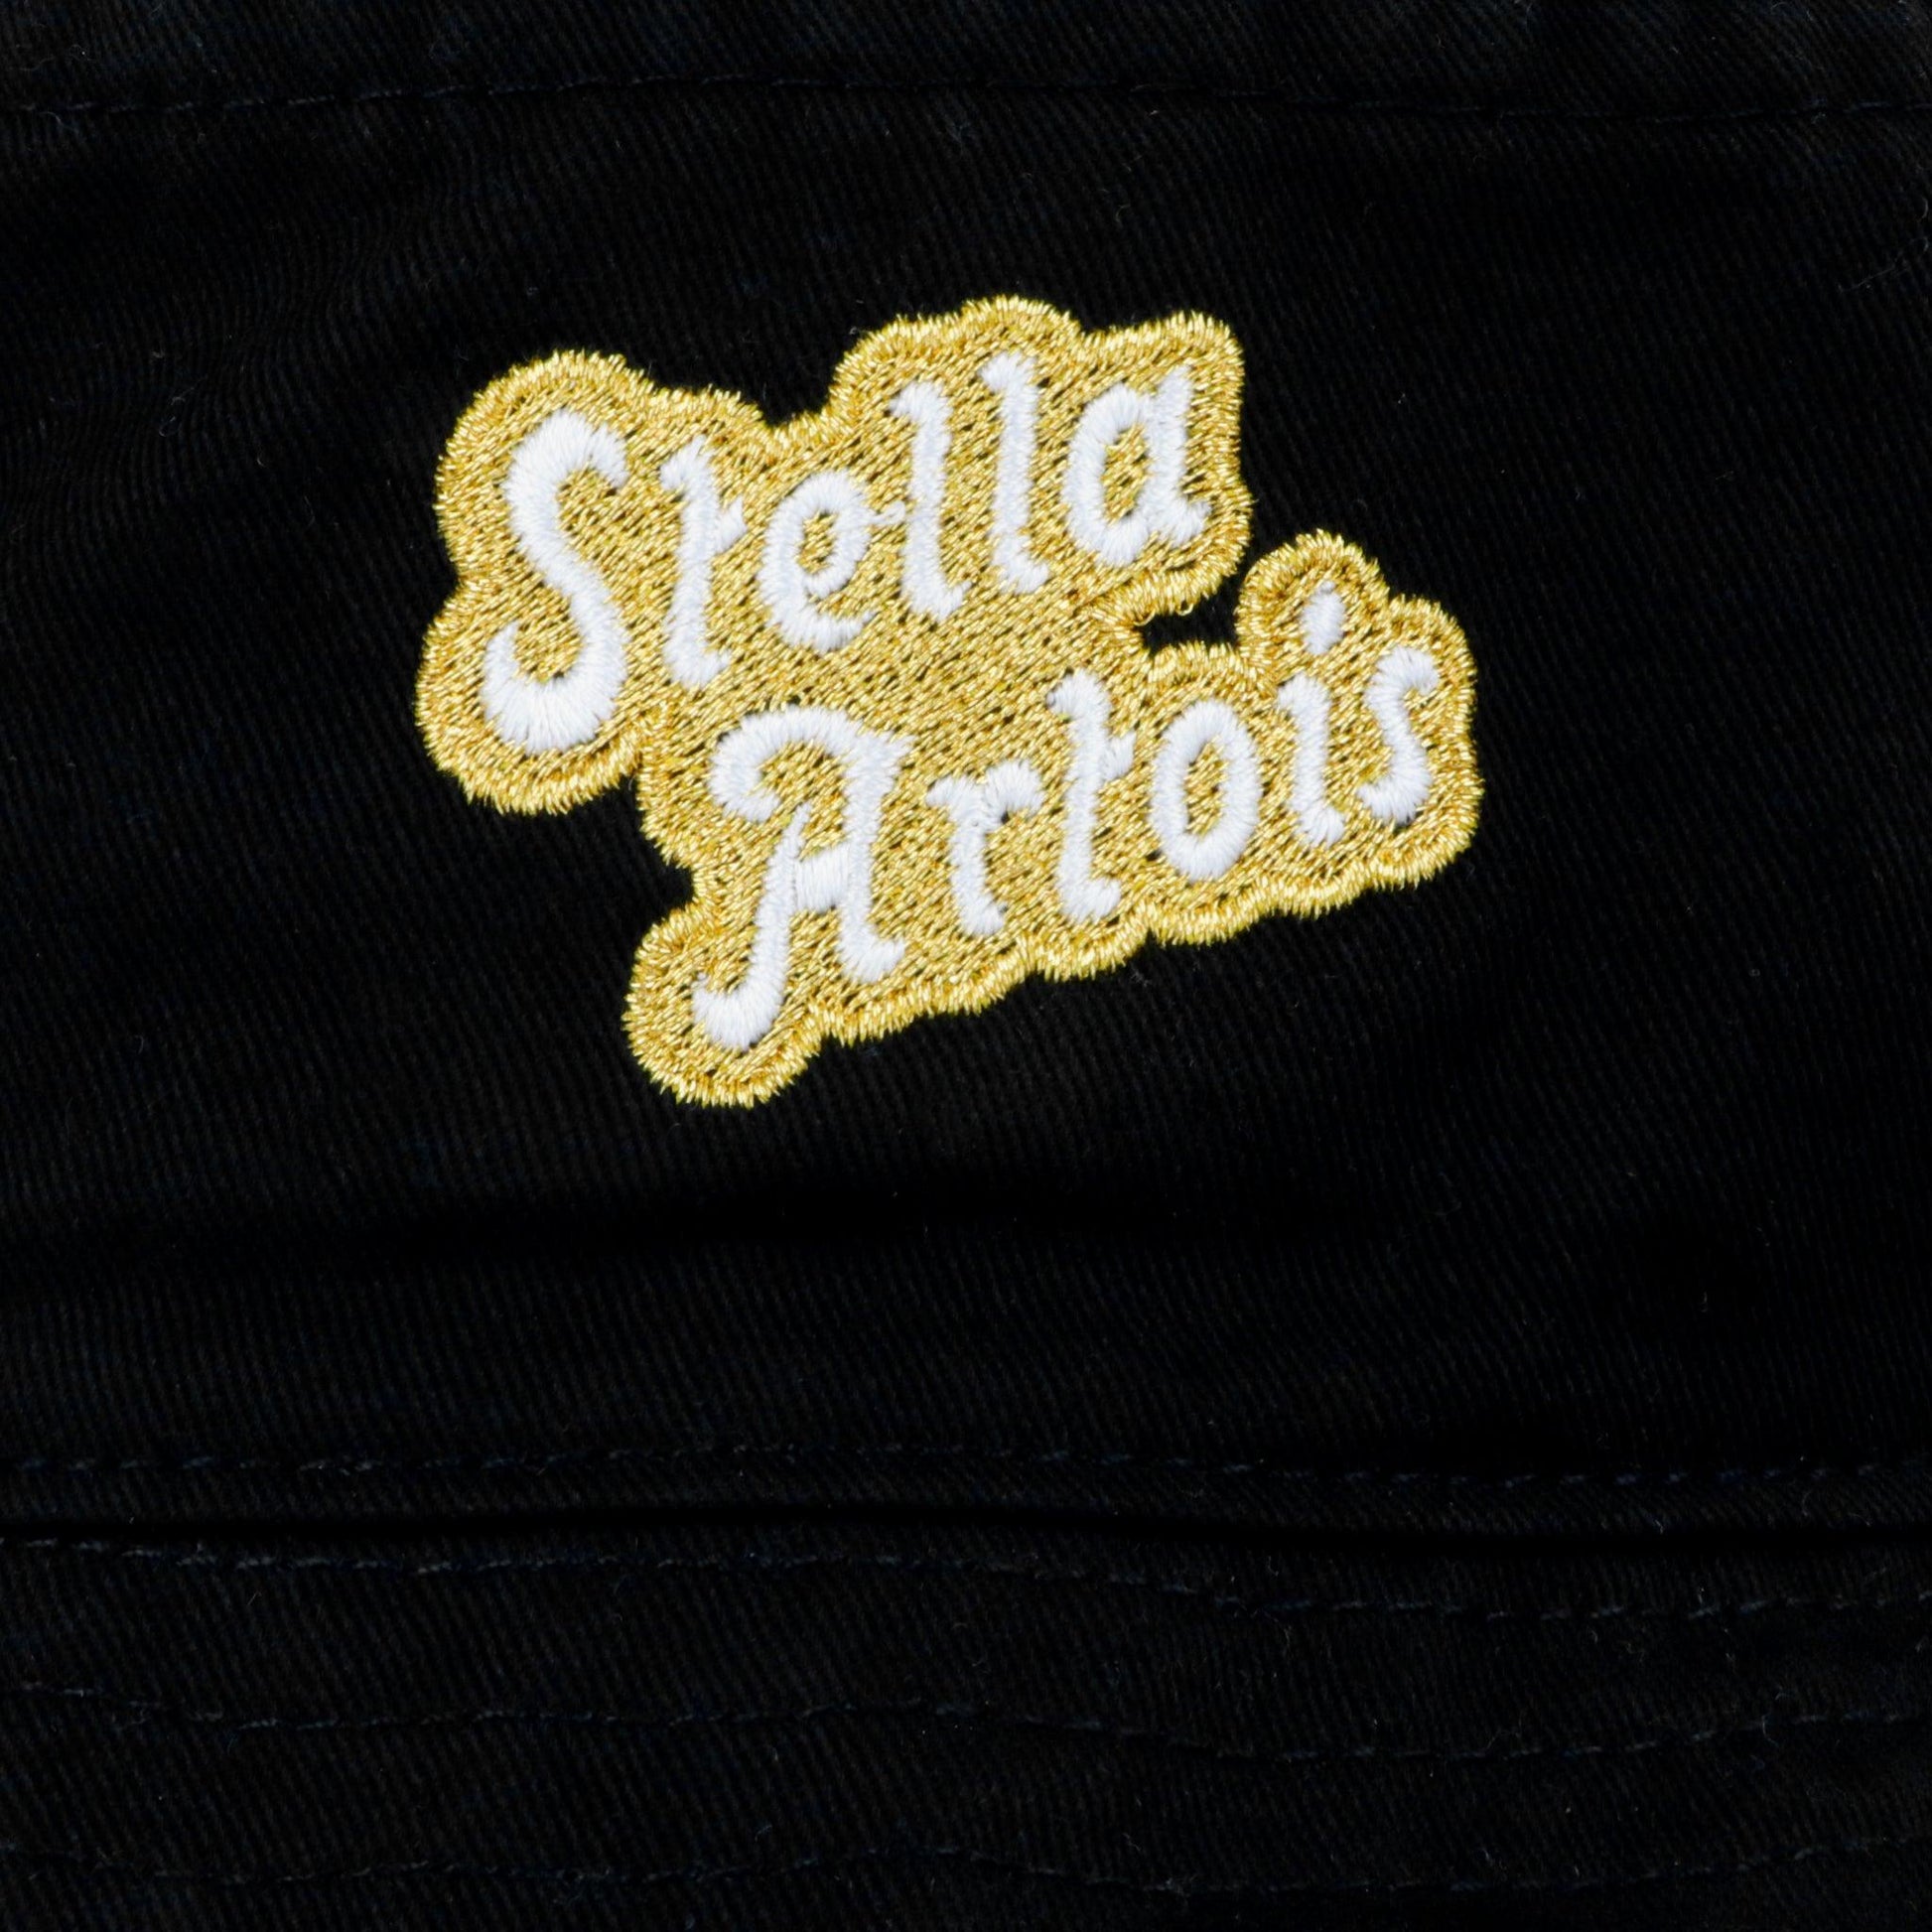 Stella artois embroidery logo detail